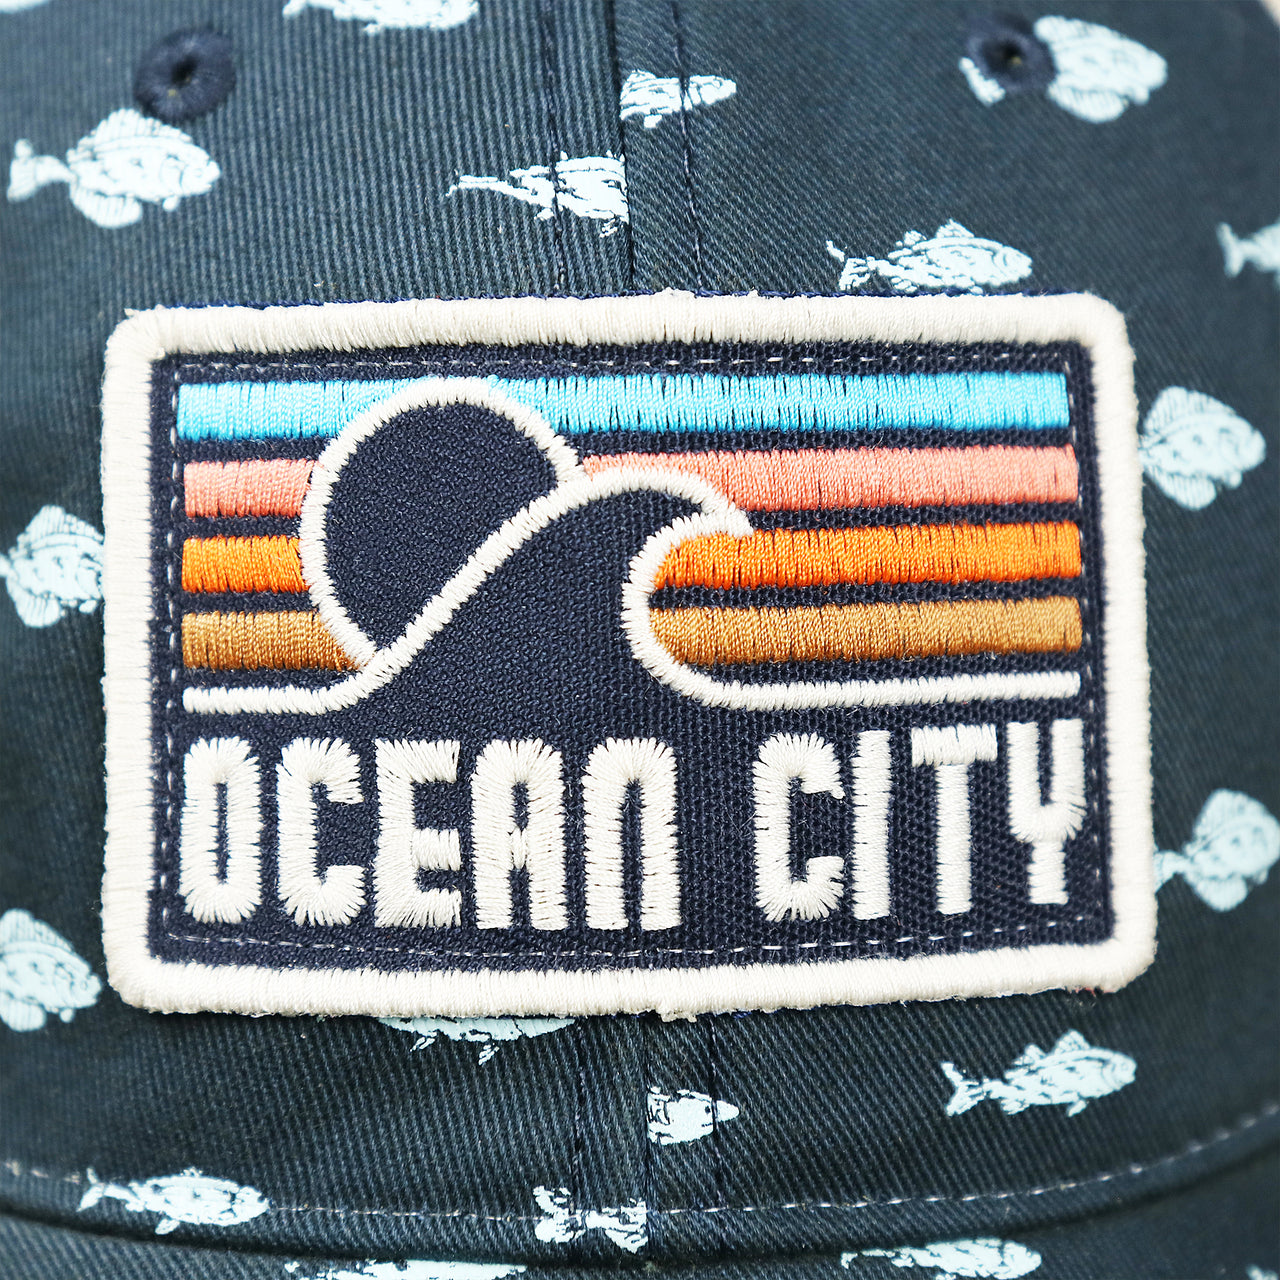 The Ocean City Sunset Logo on the Ocean City Sunset Patch Fish Print Khaki Mesh Back Trucker Hat | Navy Blue Trucker Hat